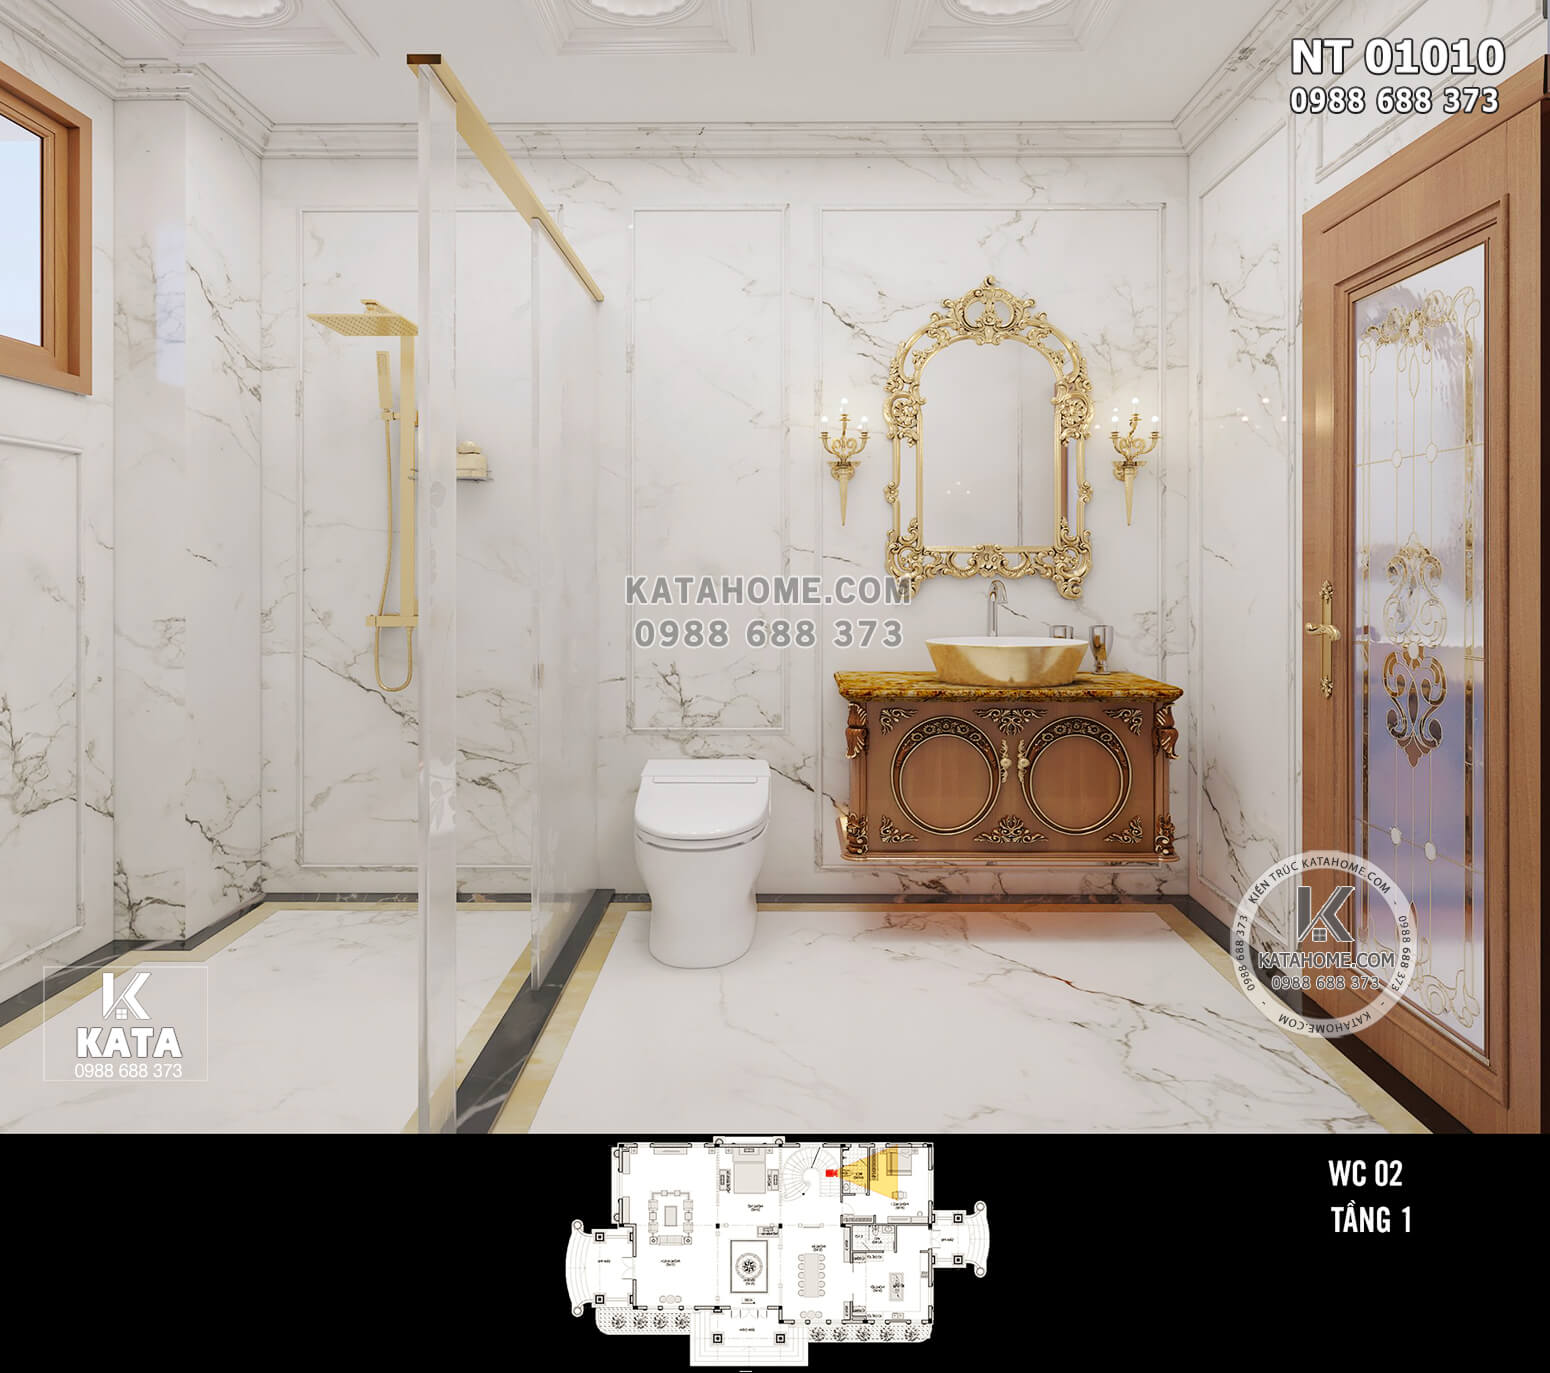 Hình ảnh: Chiêm ngưỡng thiết kế phòng tắm tân cổ điển - NT 01010